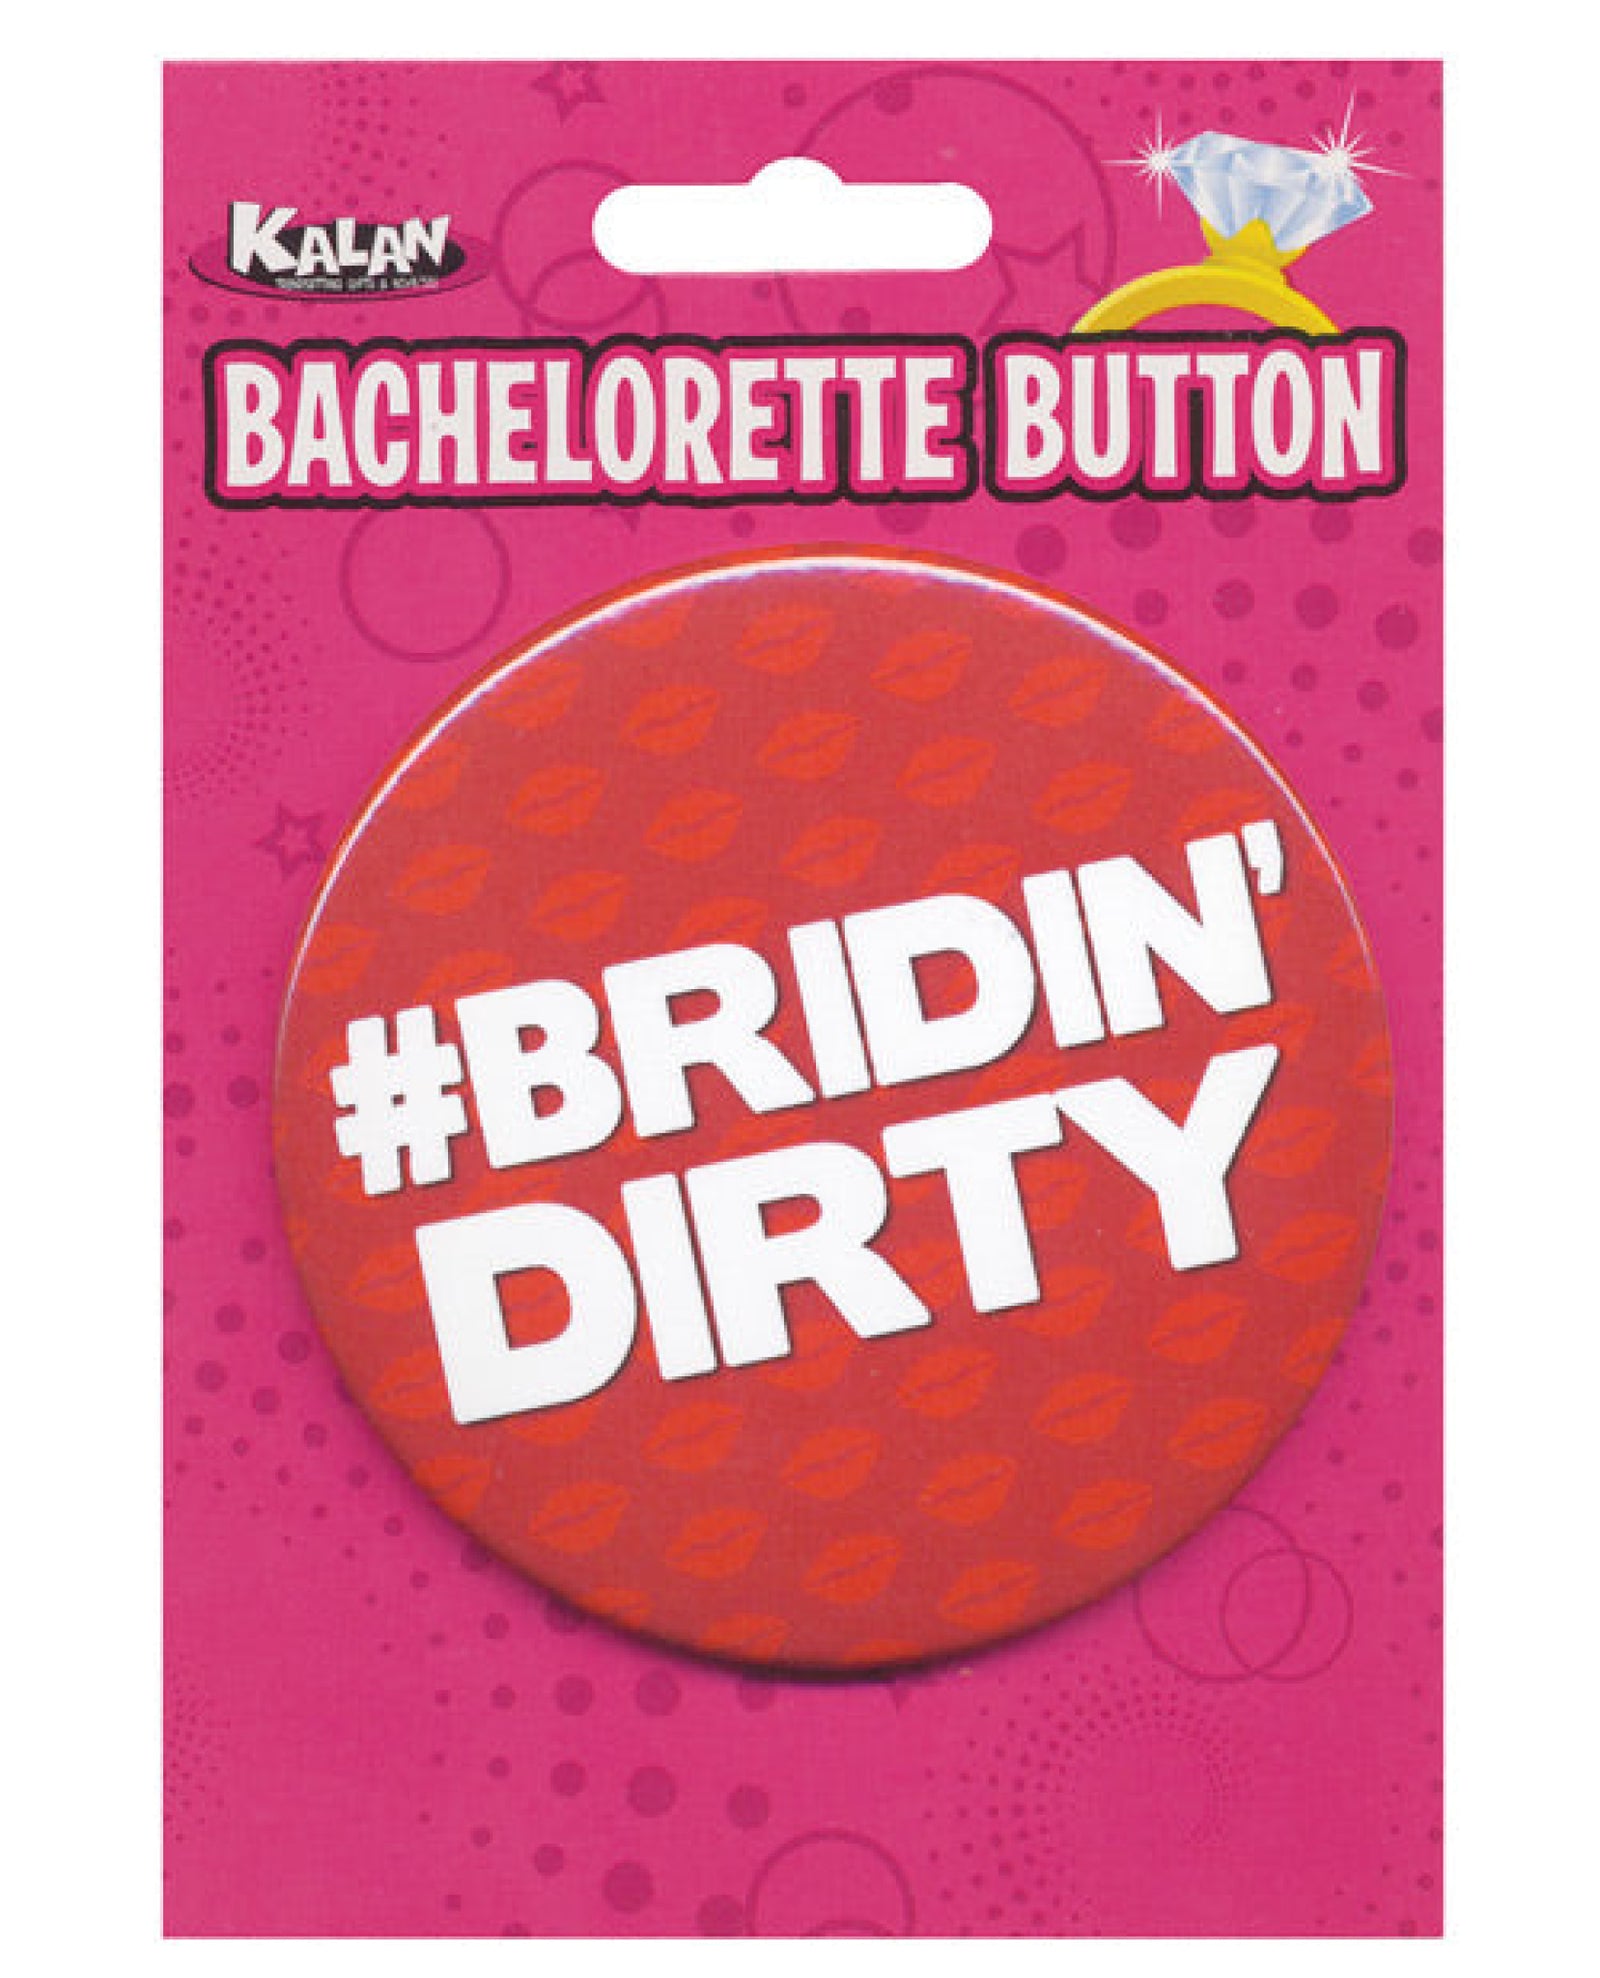 Bachelorette Button - Bridin' Dirty Kalan